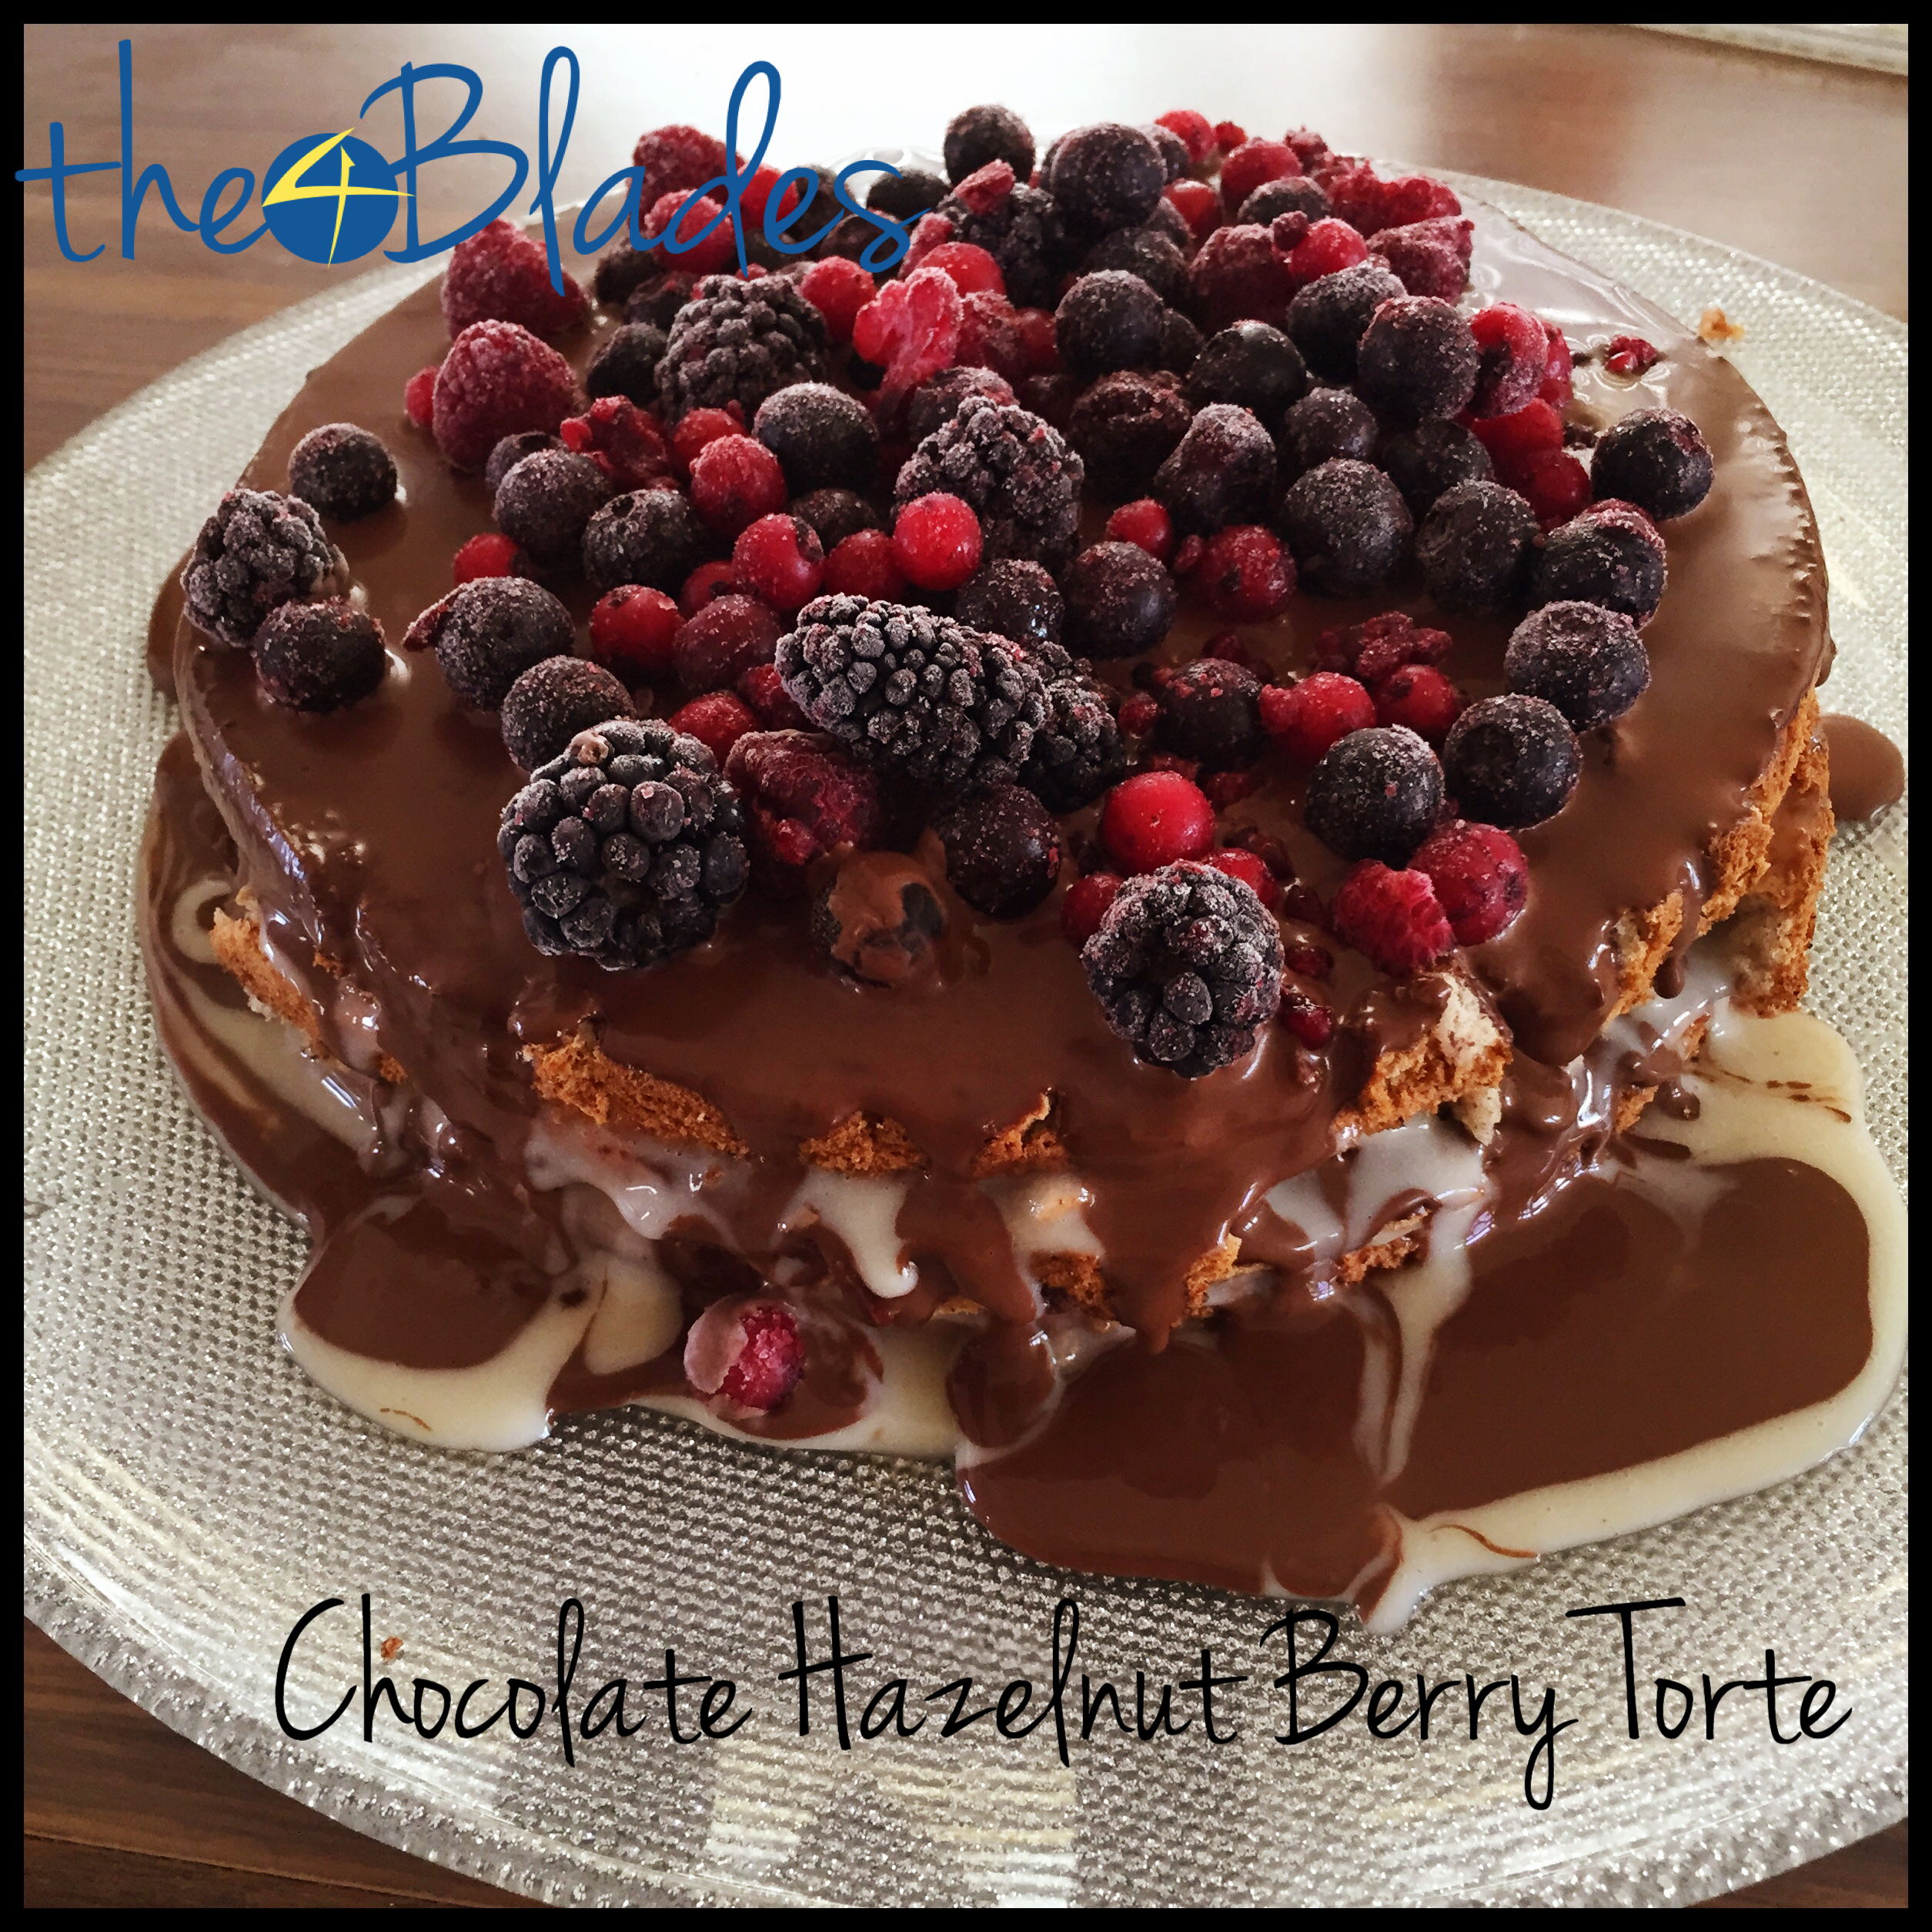 Chocolate Hazelnut Berry Torte